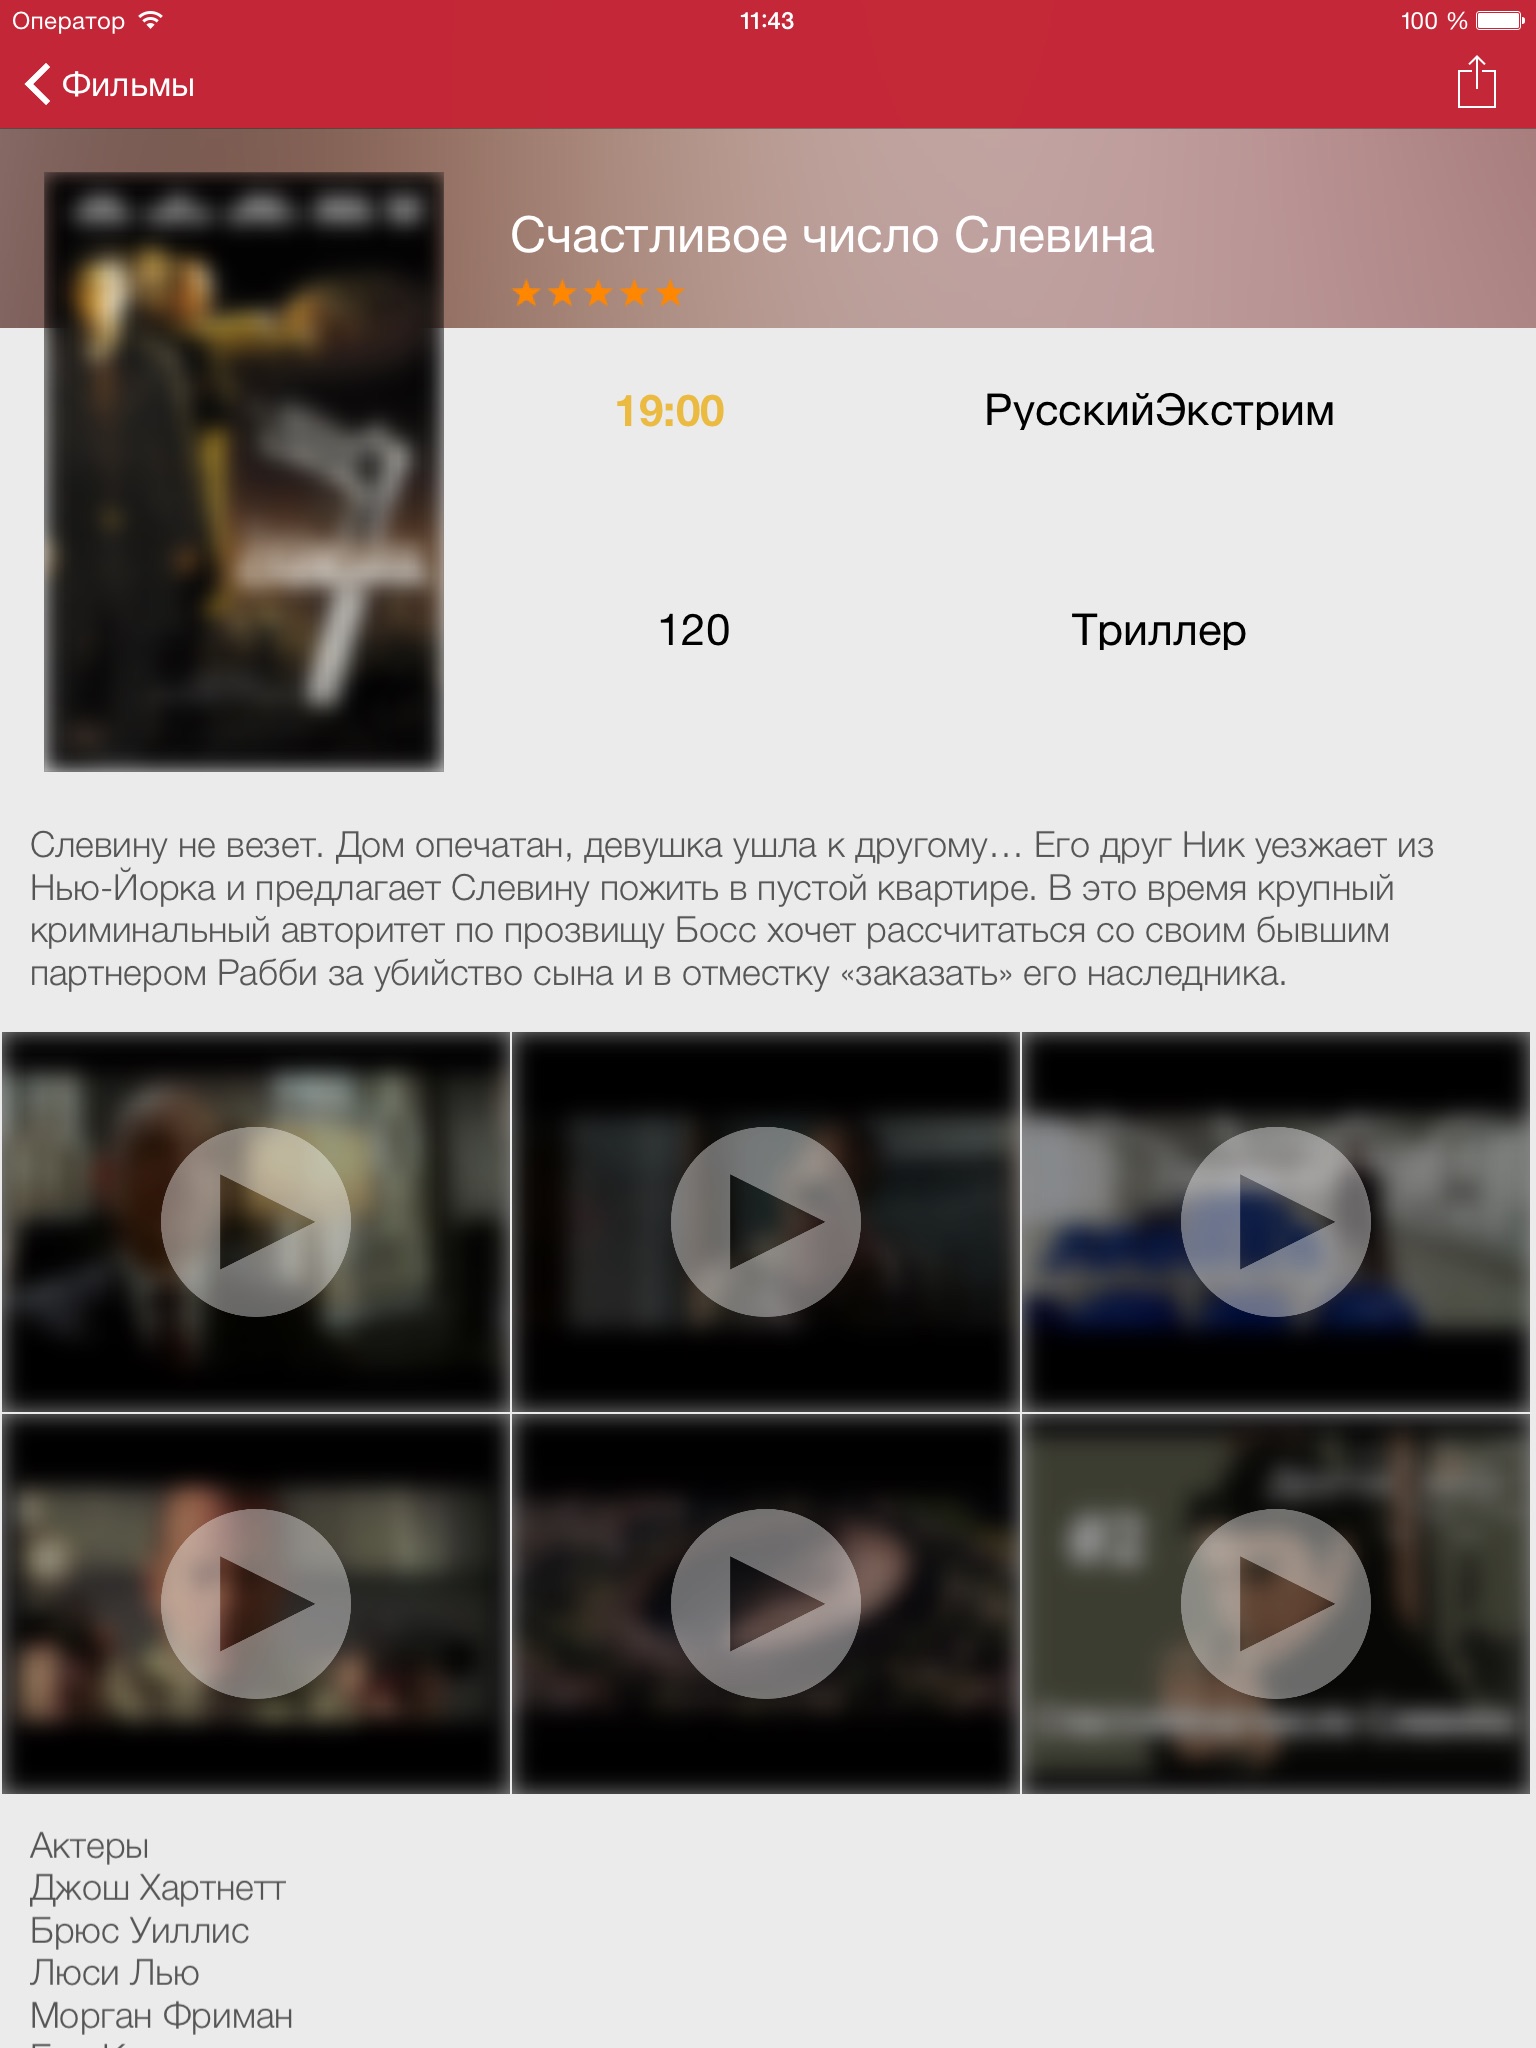 Российское телевидение телегид бесплатно телепередач (iPad издание) screenshot 3